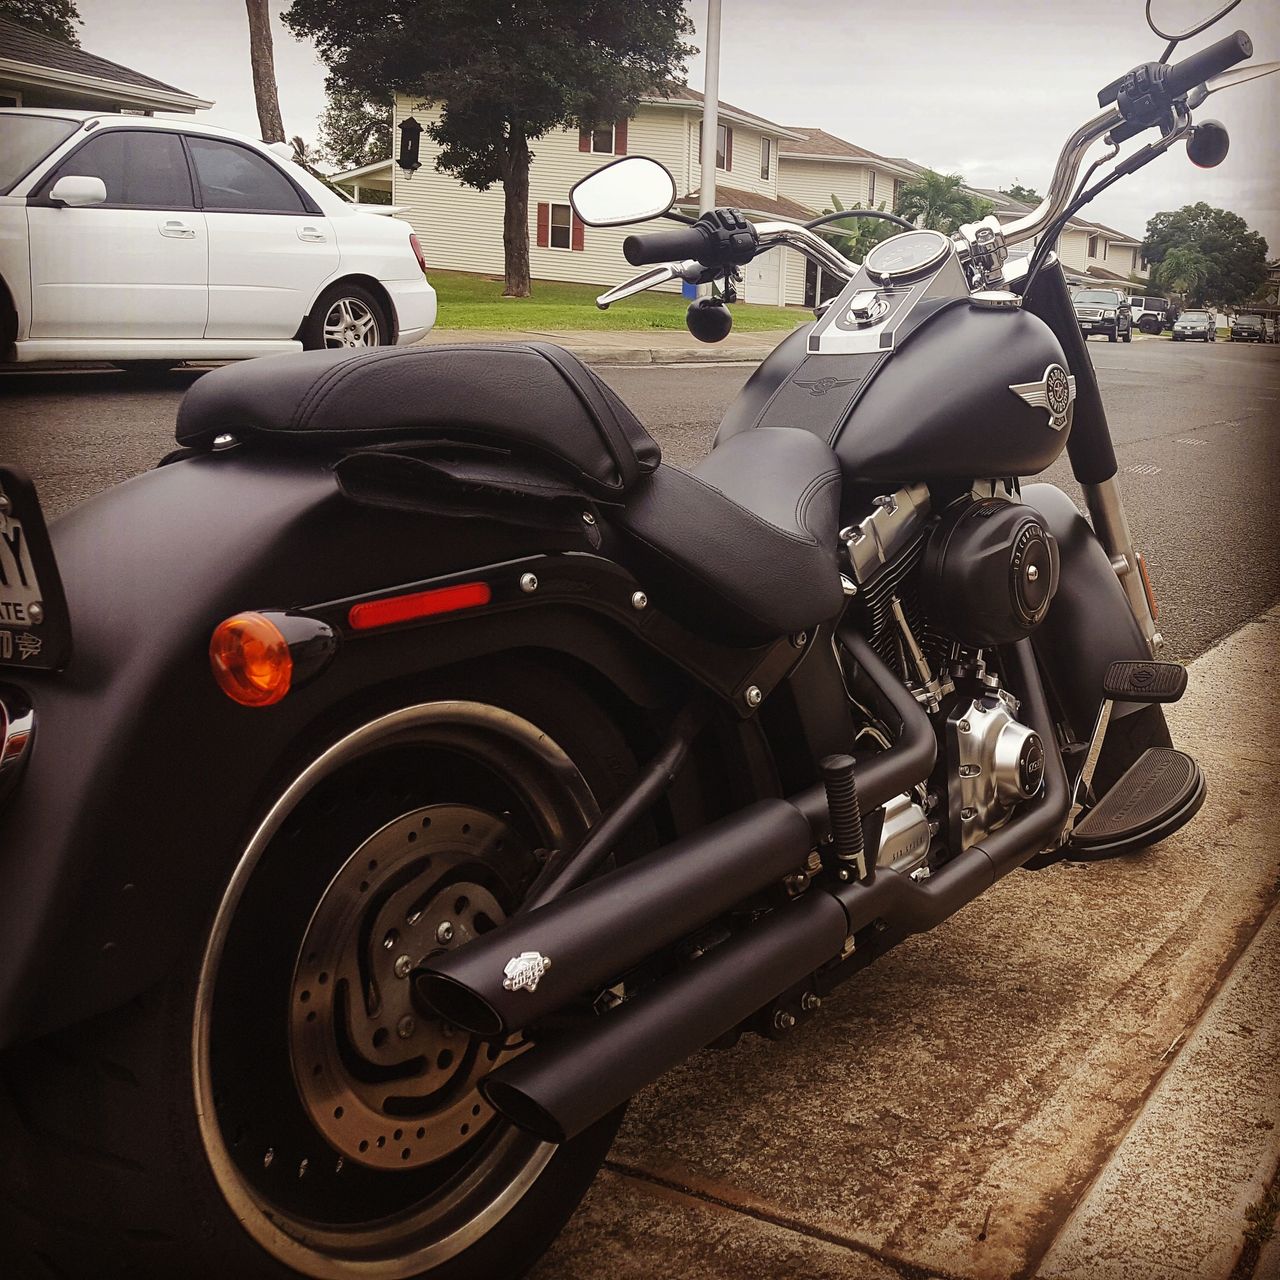 My 2015 Harley Davidson Fatboy Lo